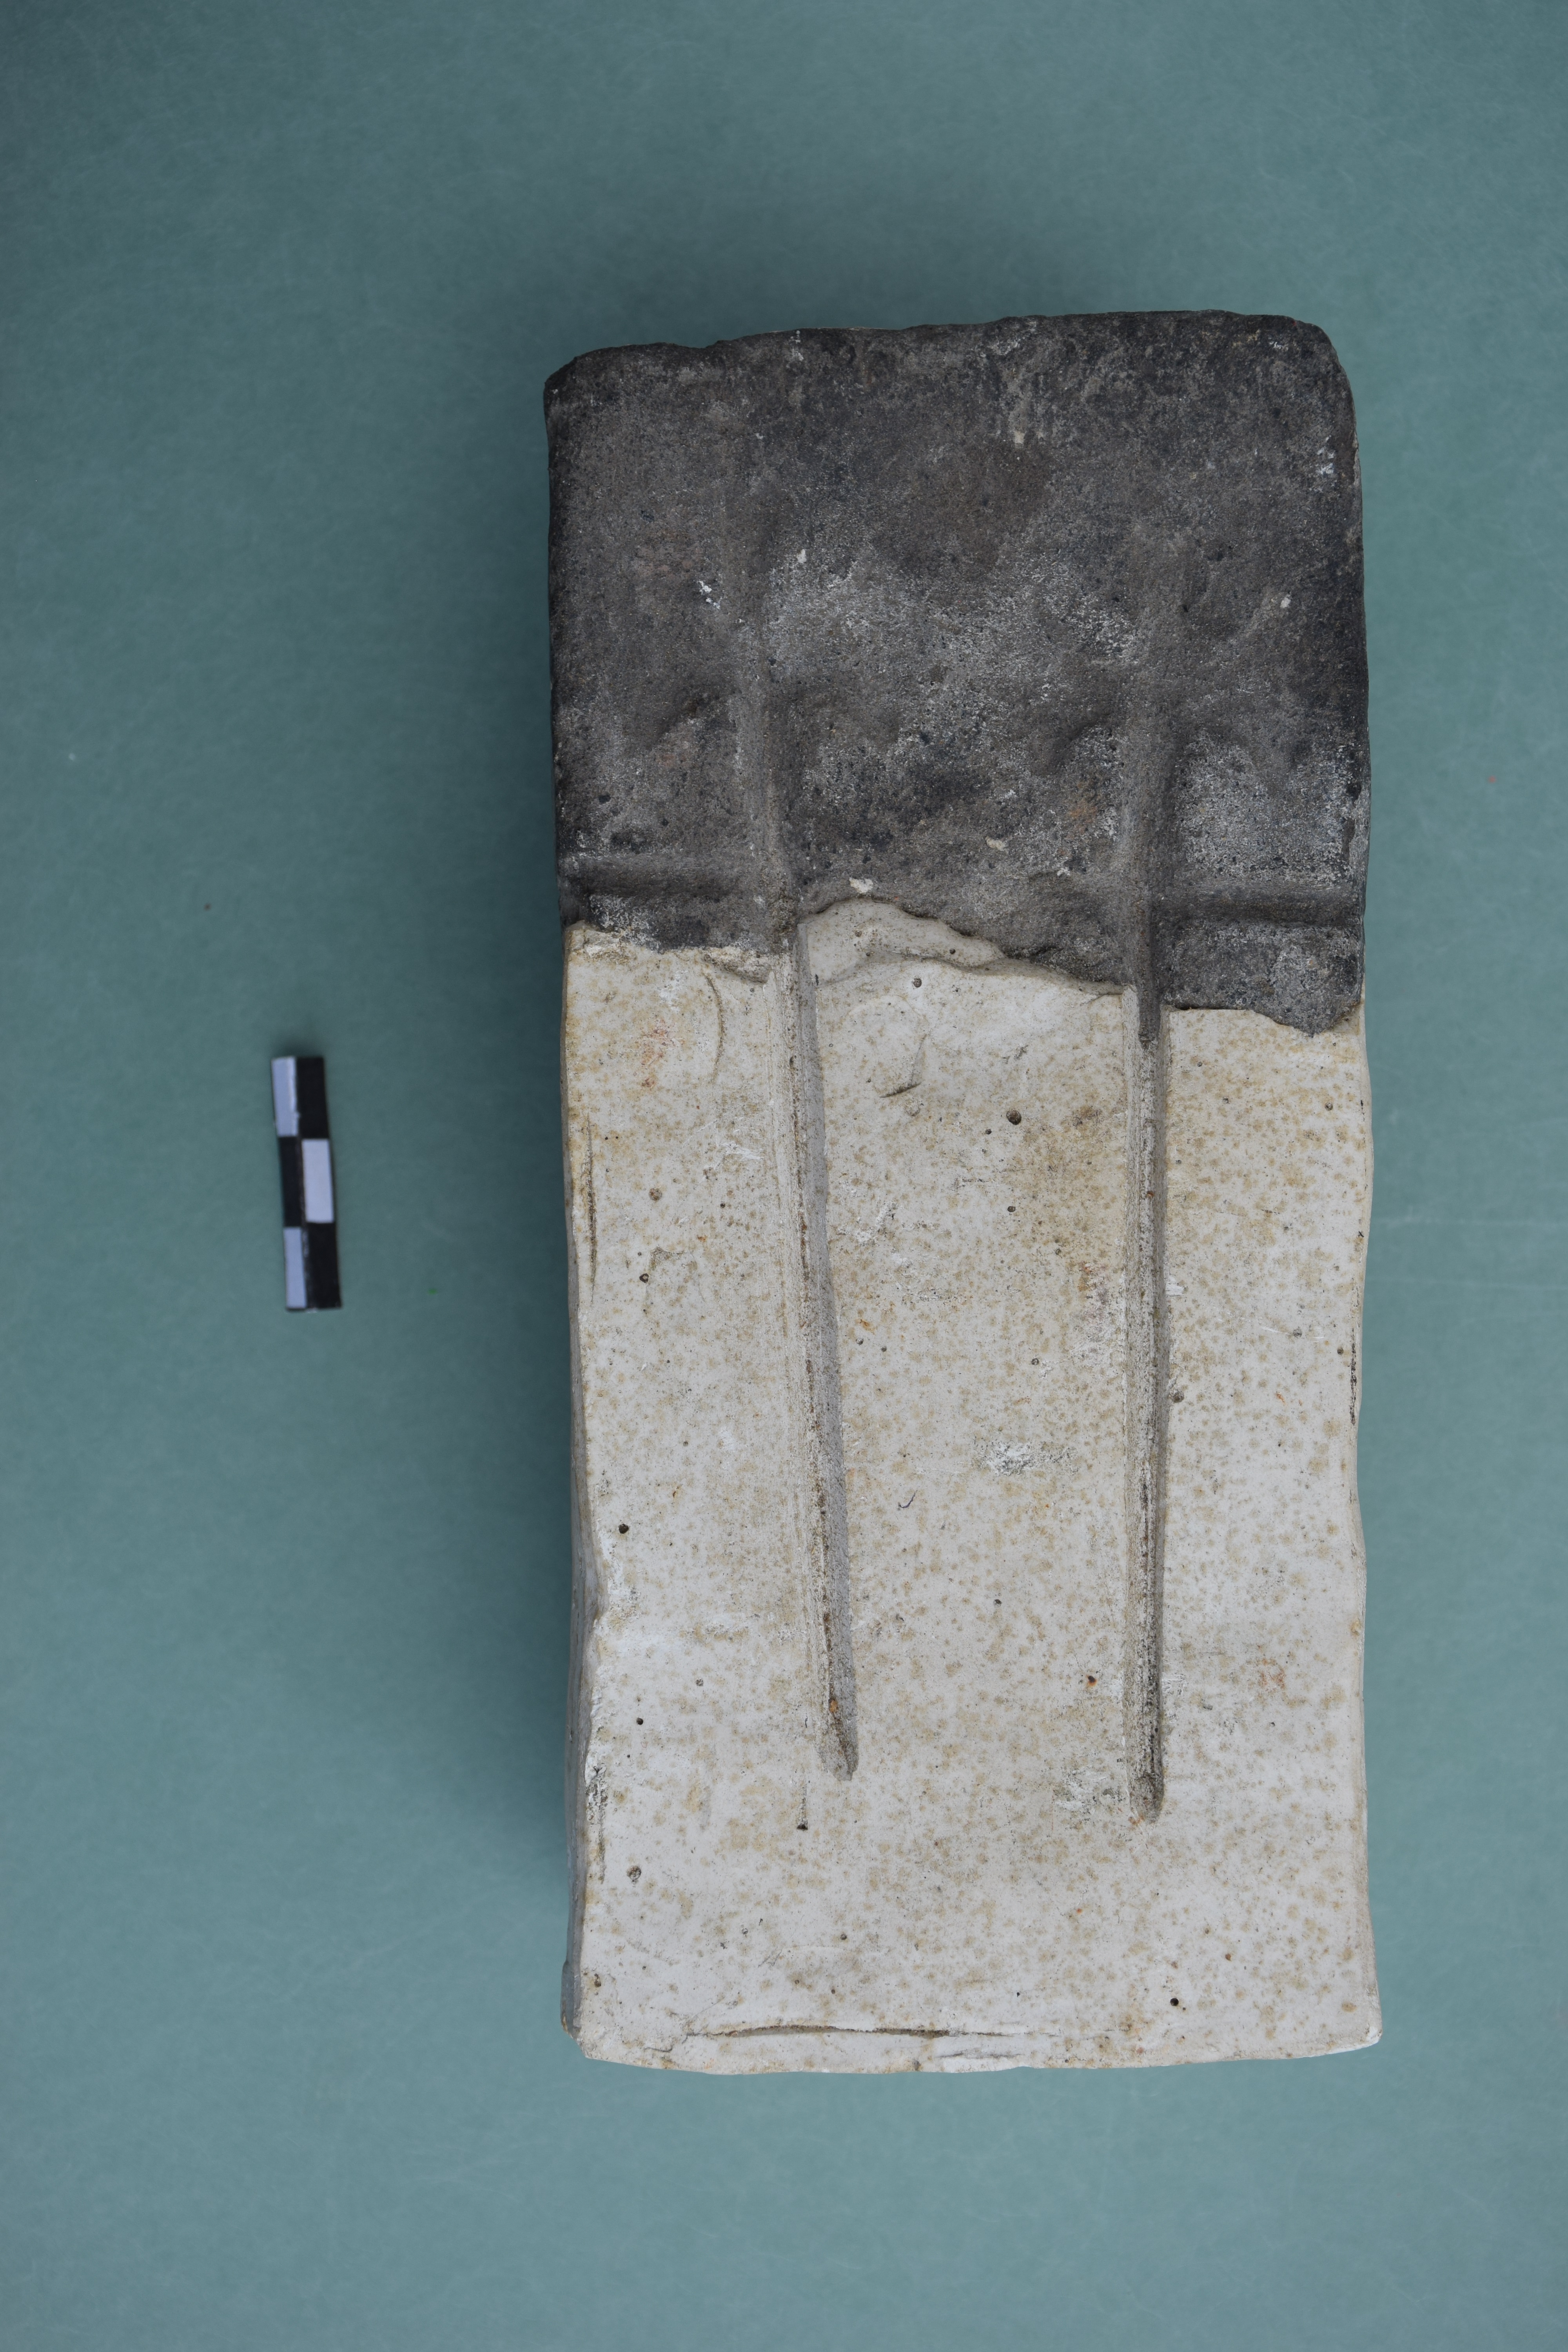 ქინძისთავის ქვის ყალიბი,ფიჭვნარი,ნაქალაქარი,ძვ.წ. II ათასწლეულის მეორე ნახევარი